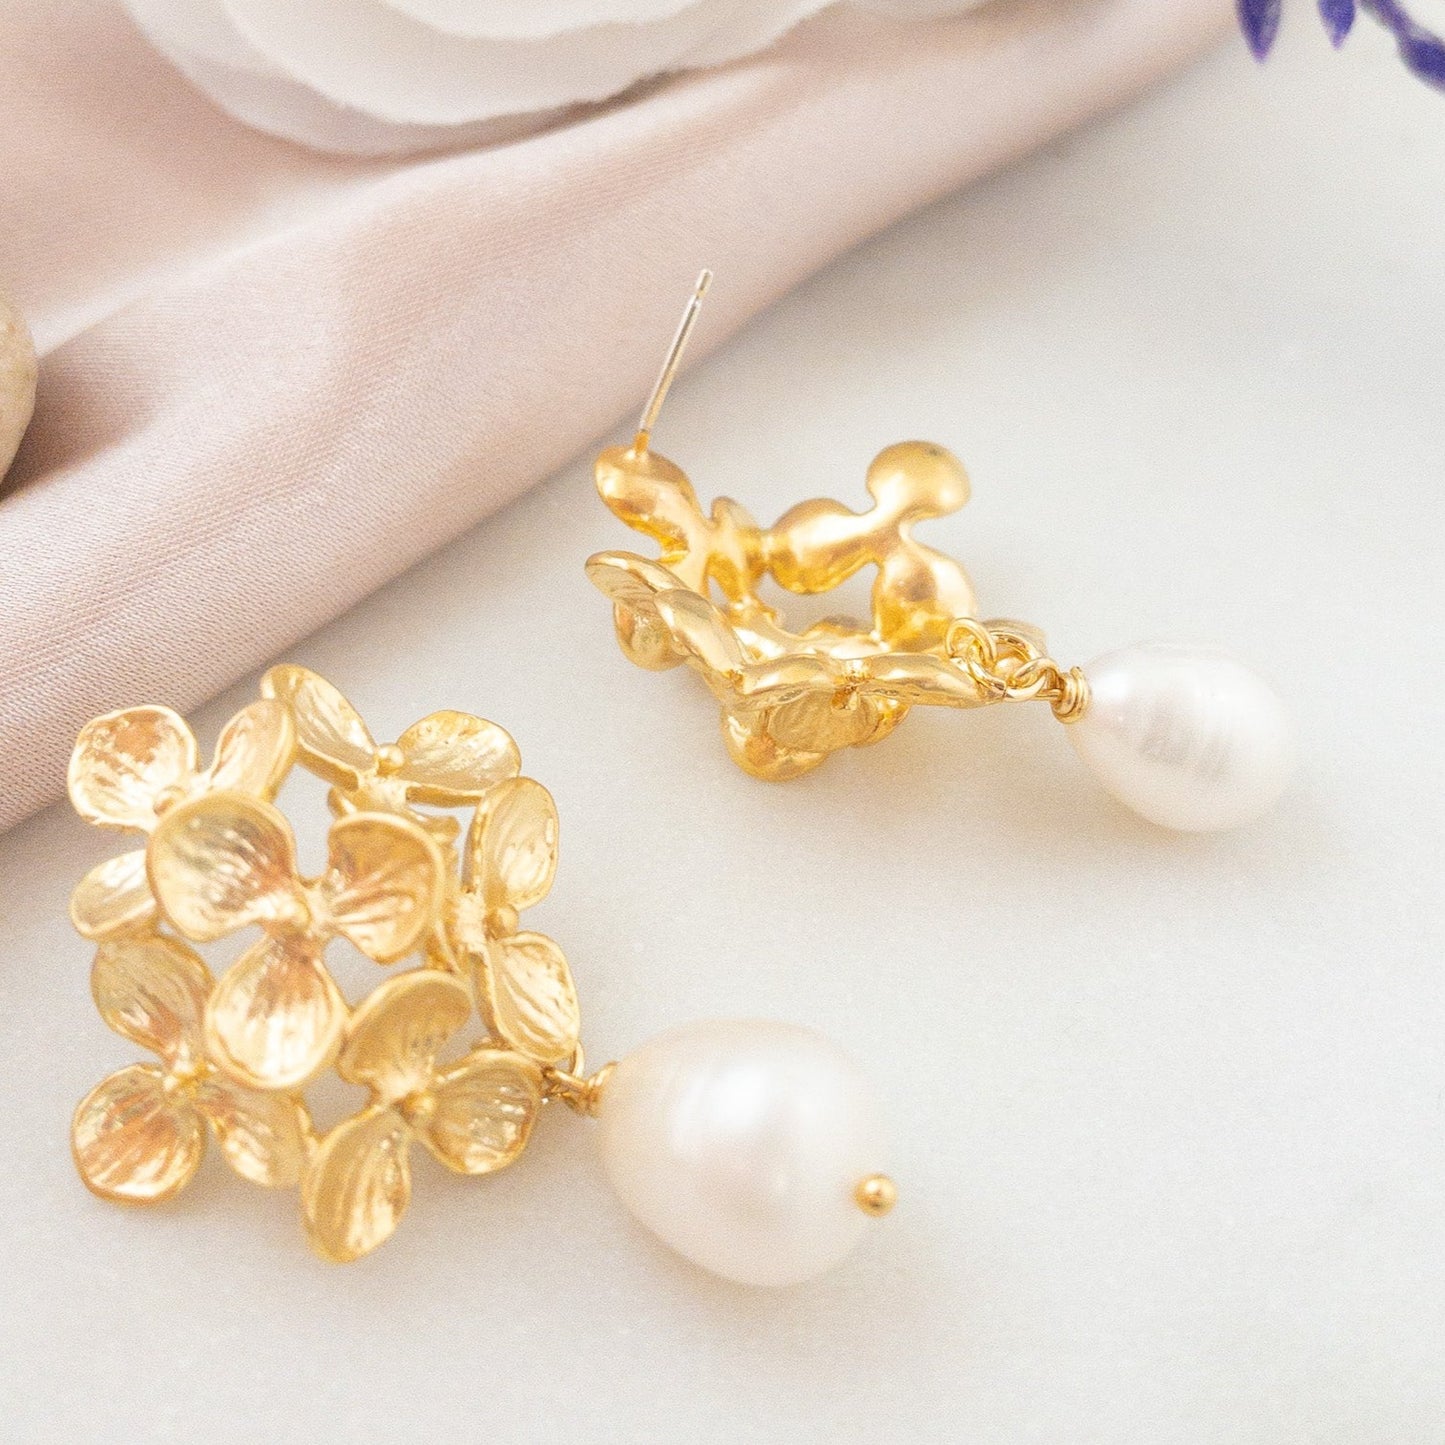 Hydrangea Flower Earrings with Freshwater Pearls